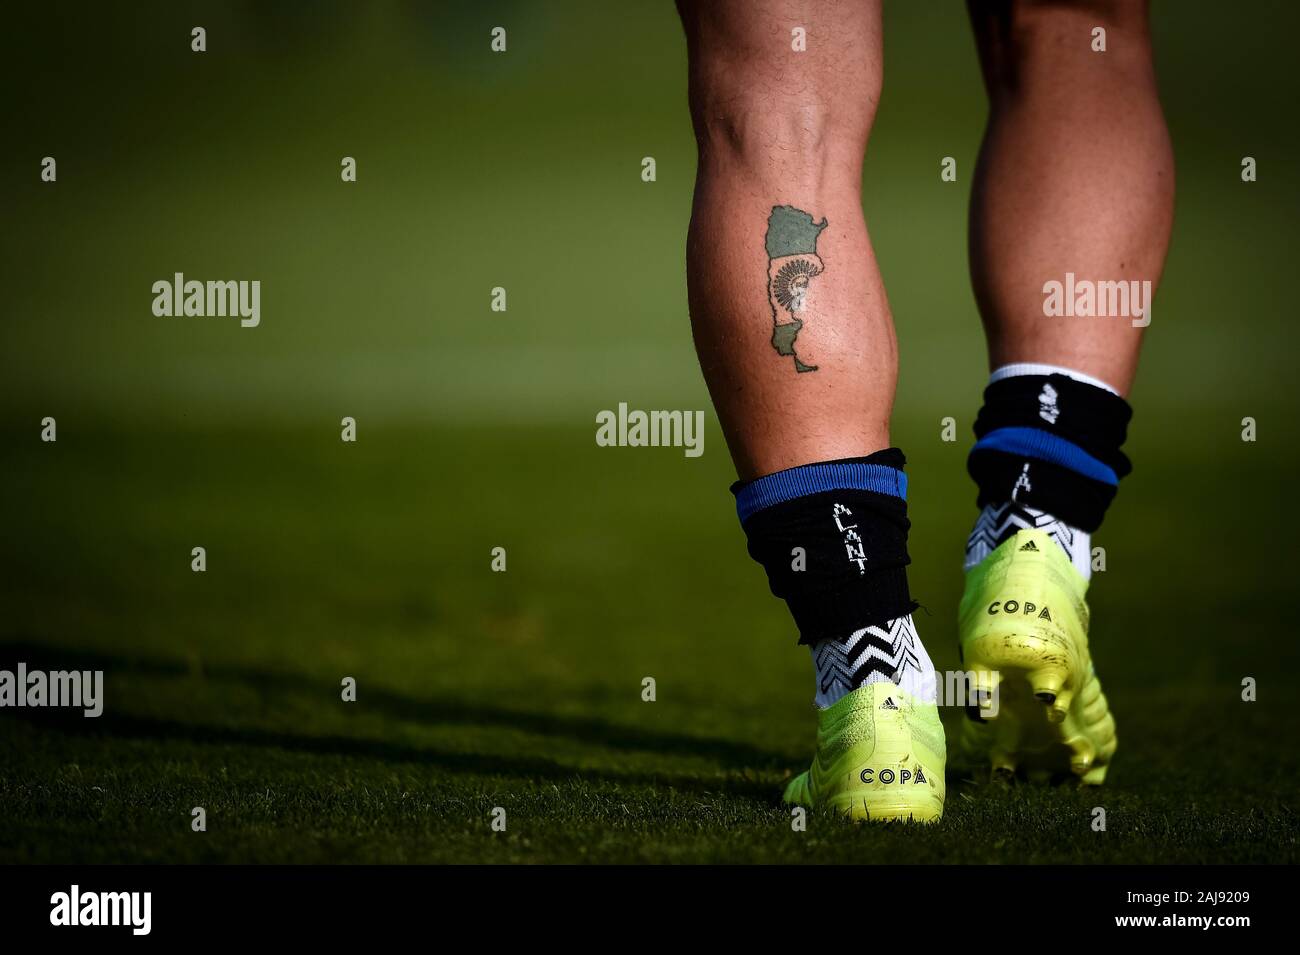 Tatuaggio Di Calcio Immagini e Fotos Stock - Alamy